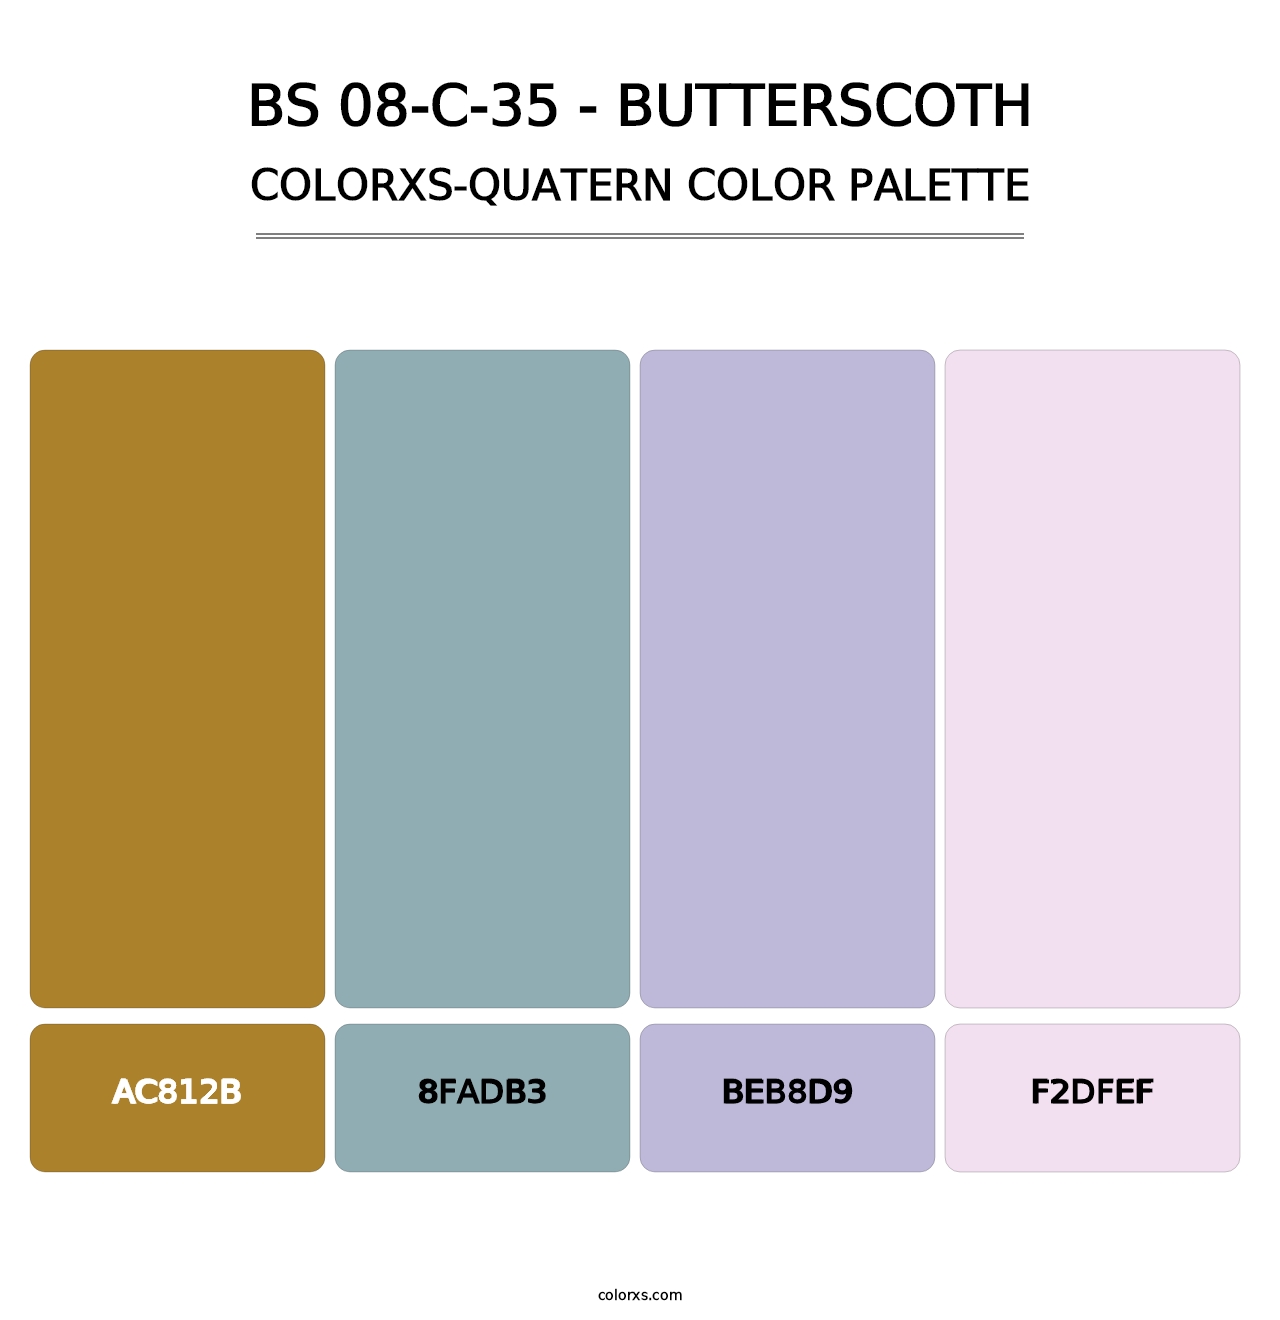 BS 08-C-35 - Butterscoth - Colorxs Quatern Palette